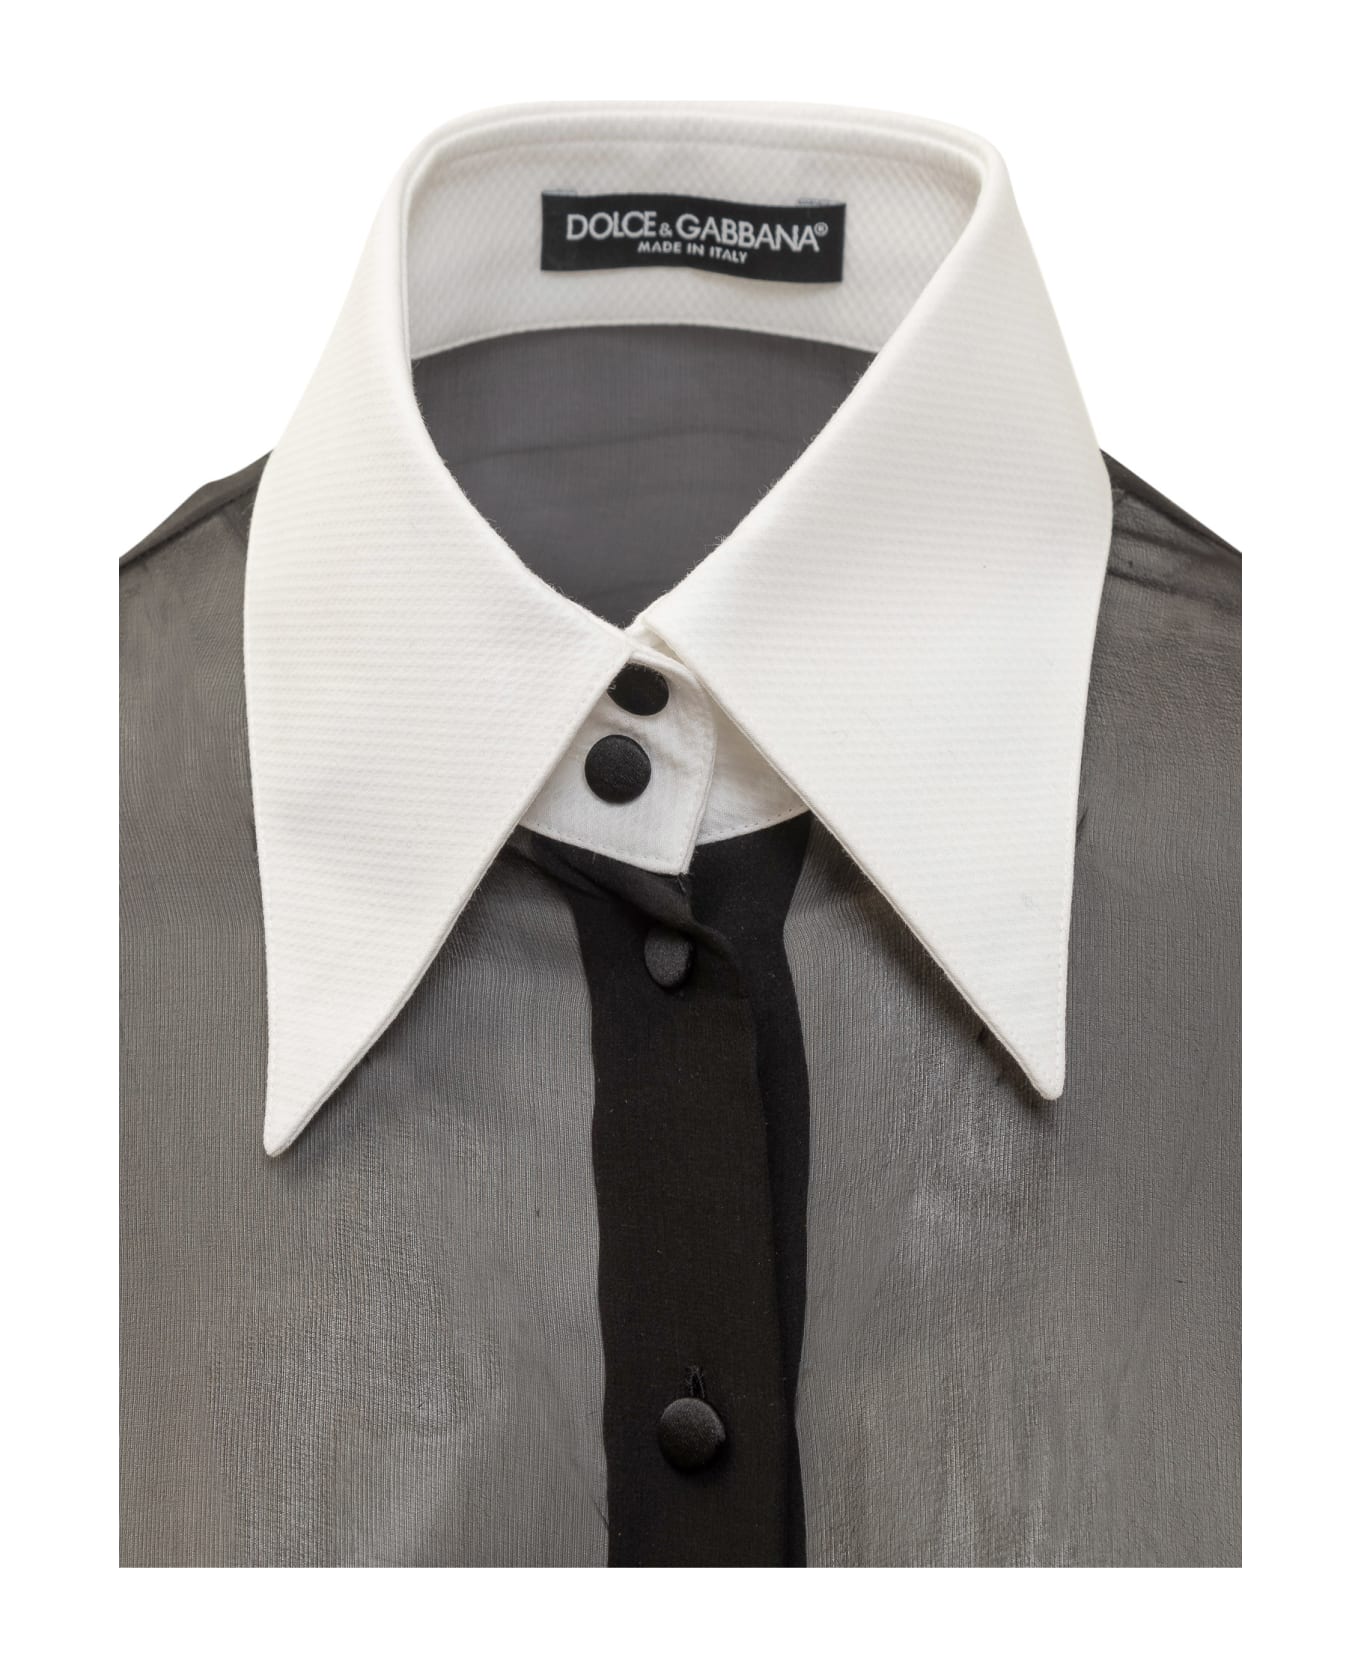 Dolce & Gabbana Silk Shirt - NERO シャツ